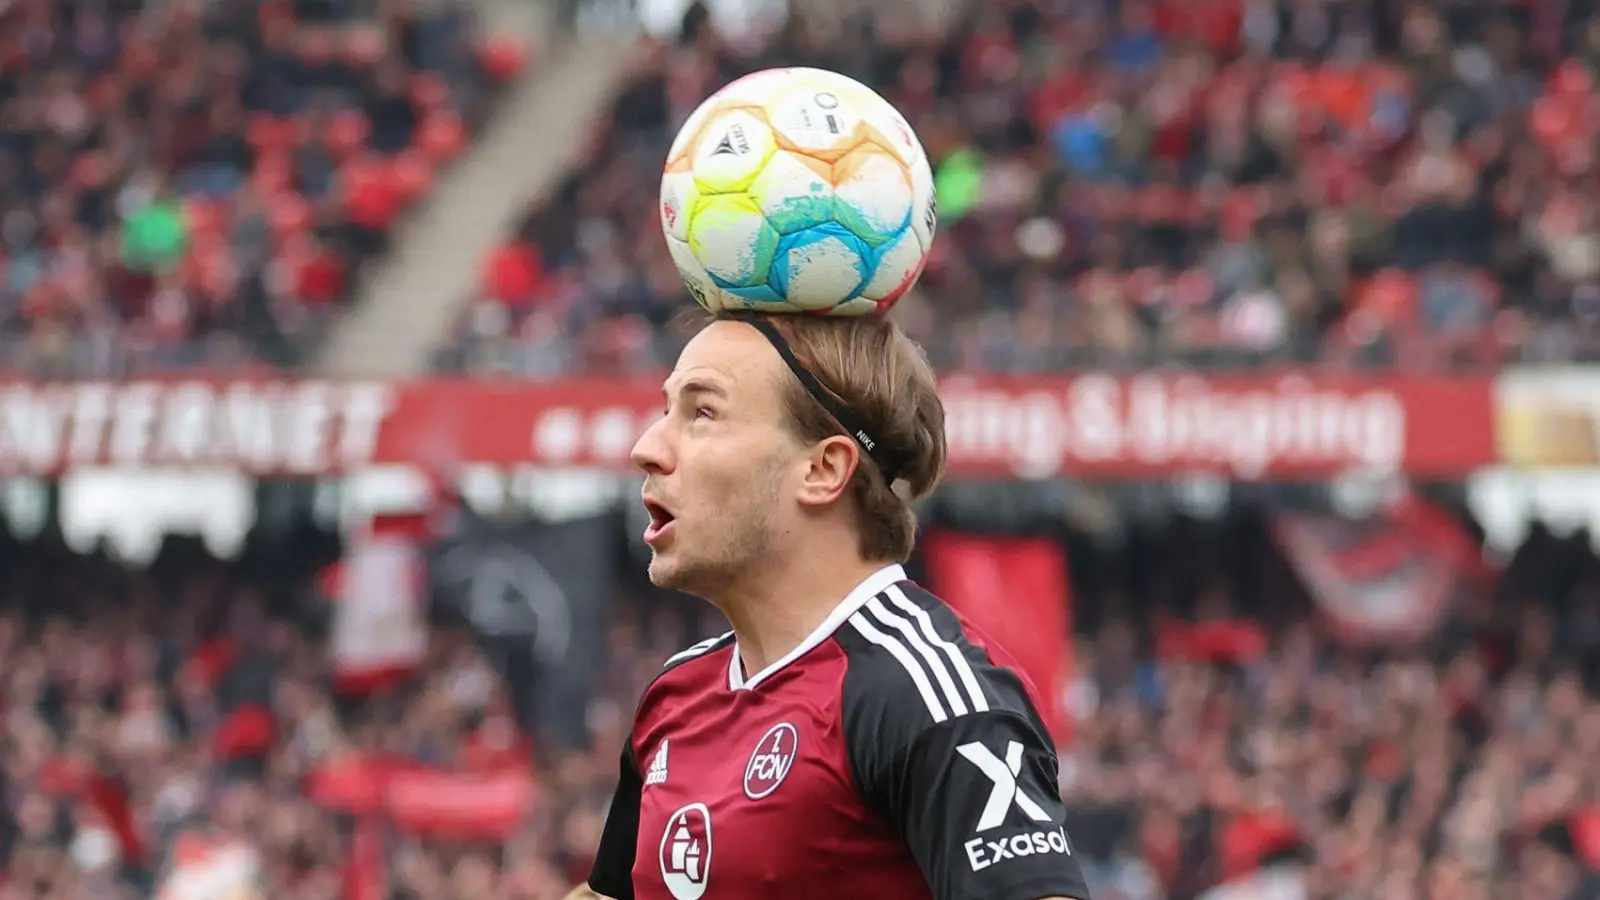 Der Nürnberger Felix Lohkemper spielt den Ball. (Foto: Daniel Karmann/dpa)